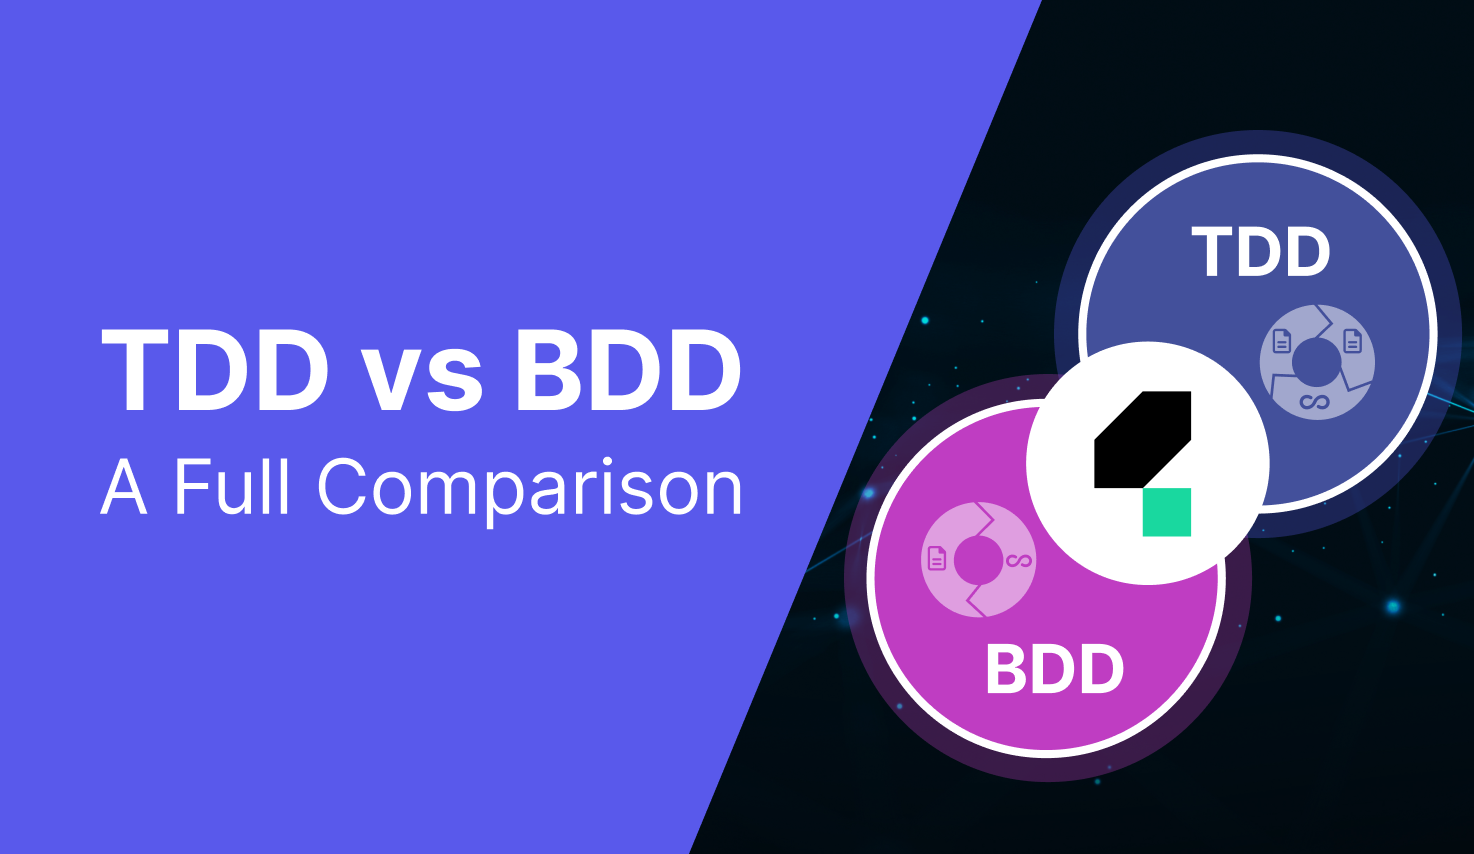 TDD vs BDD full comparison